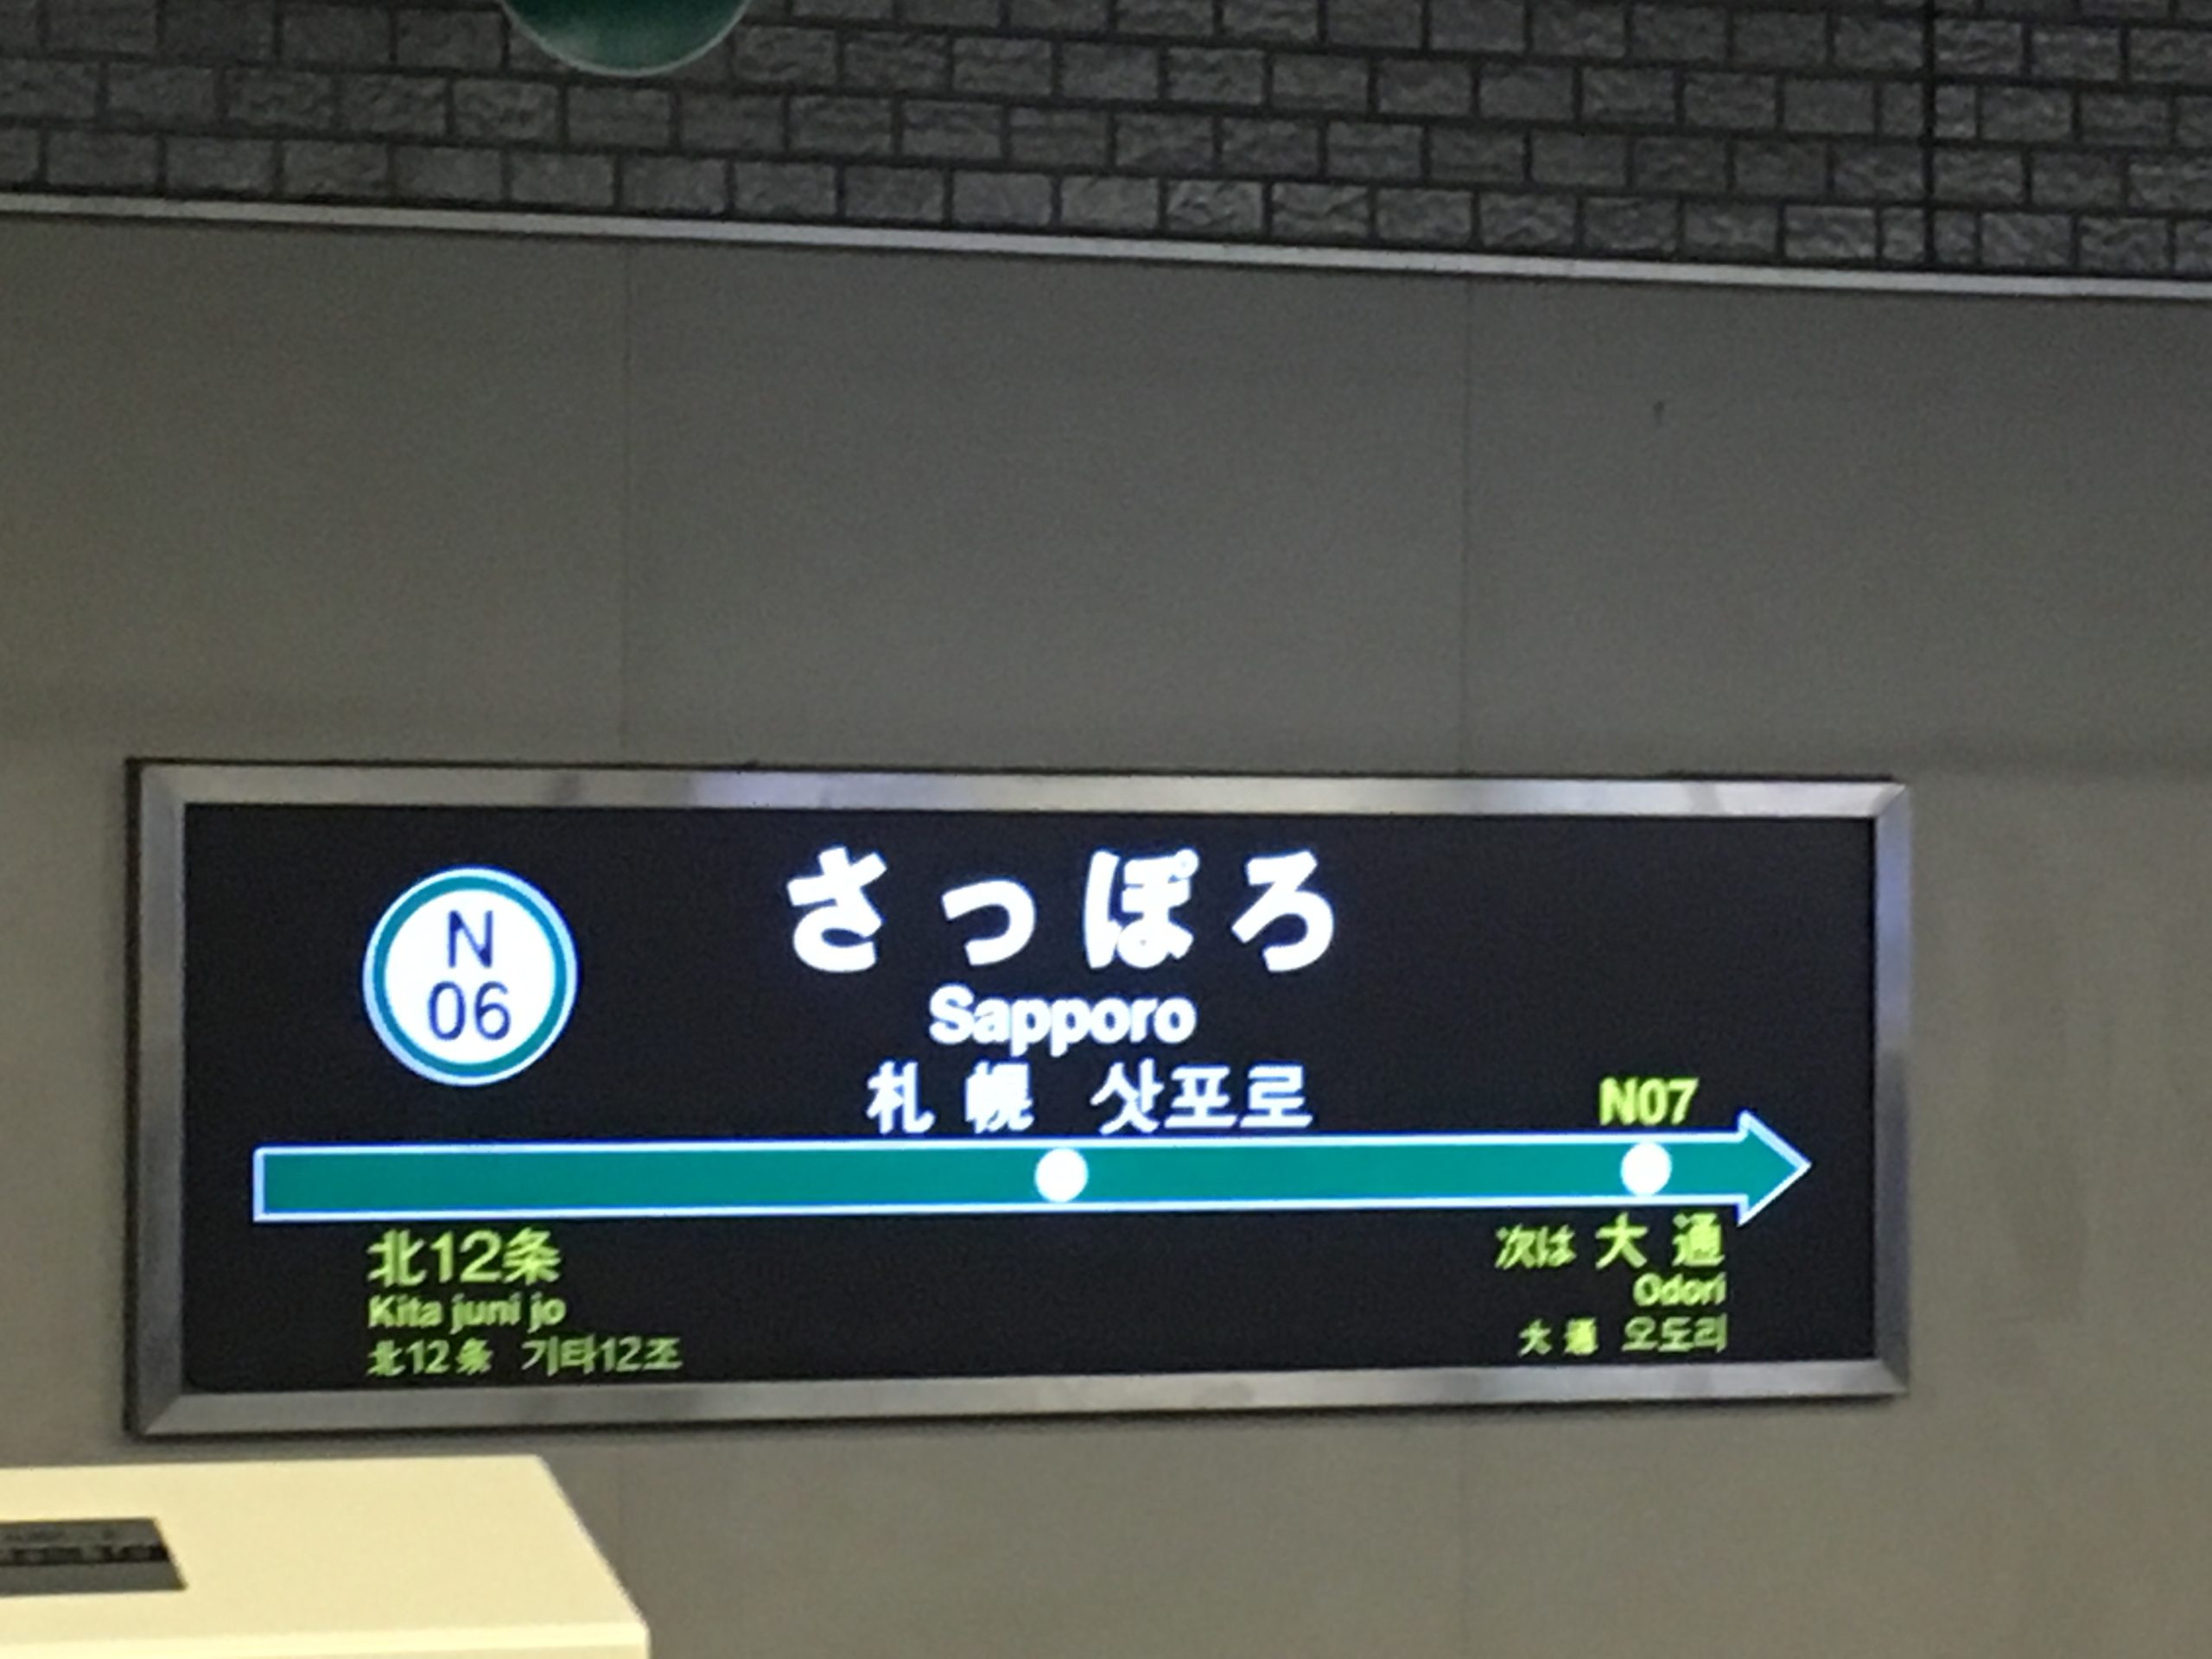 札幌市営地下鉄南北線「さっぽろ駅」